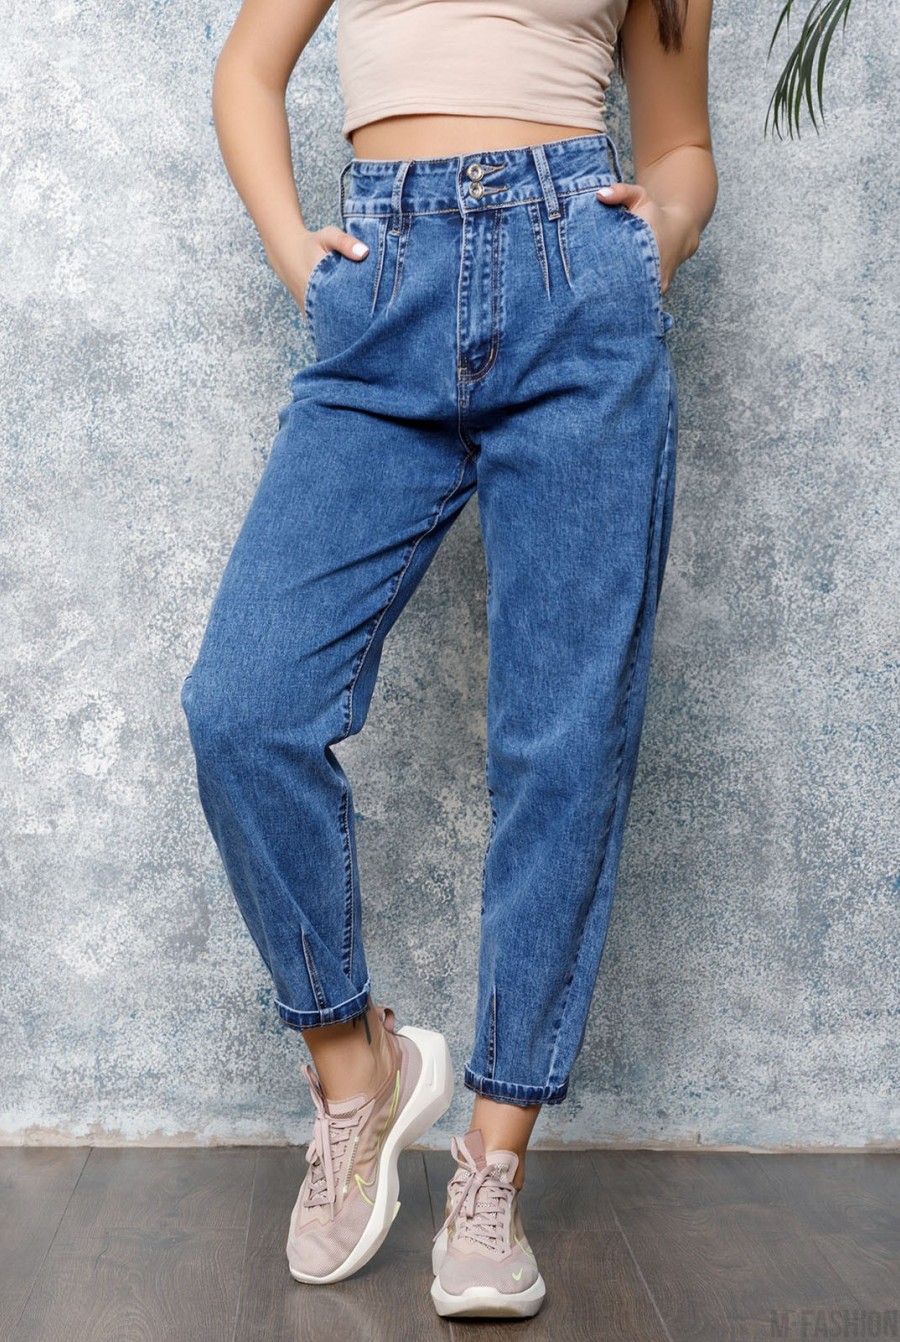 Синие свободные джинсы со сборками - Фото 1